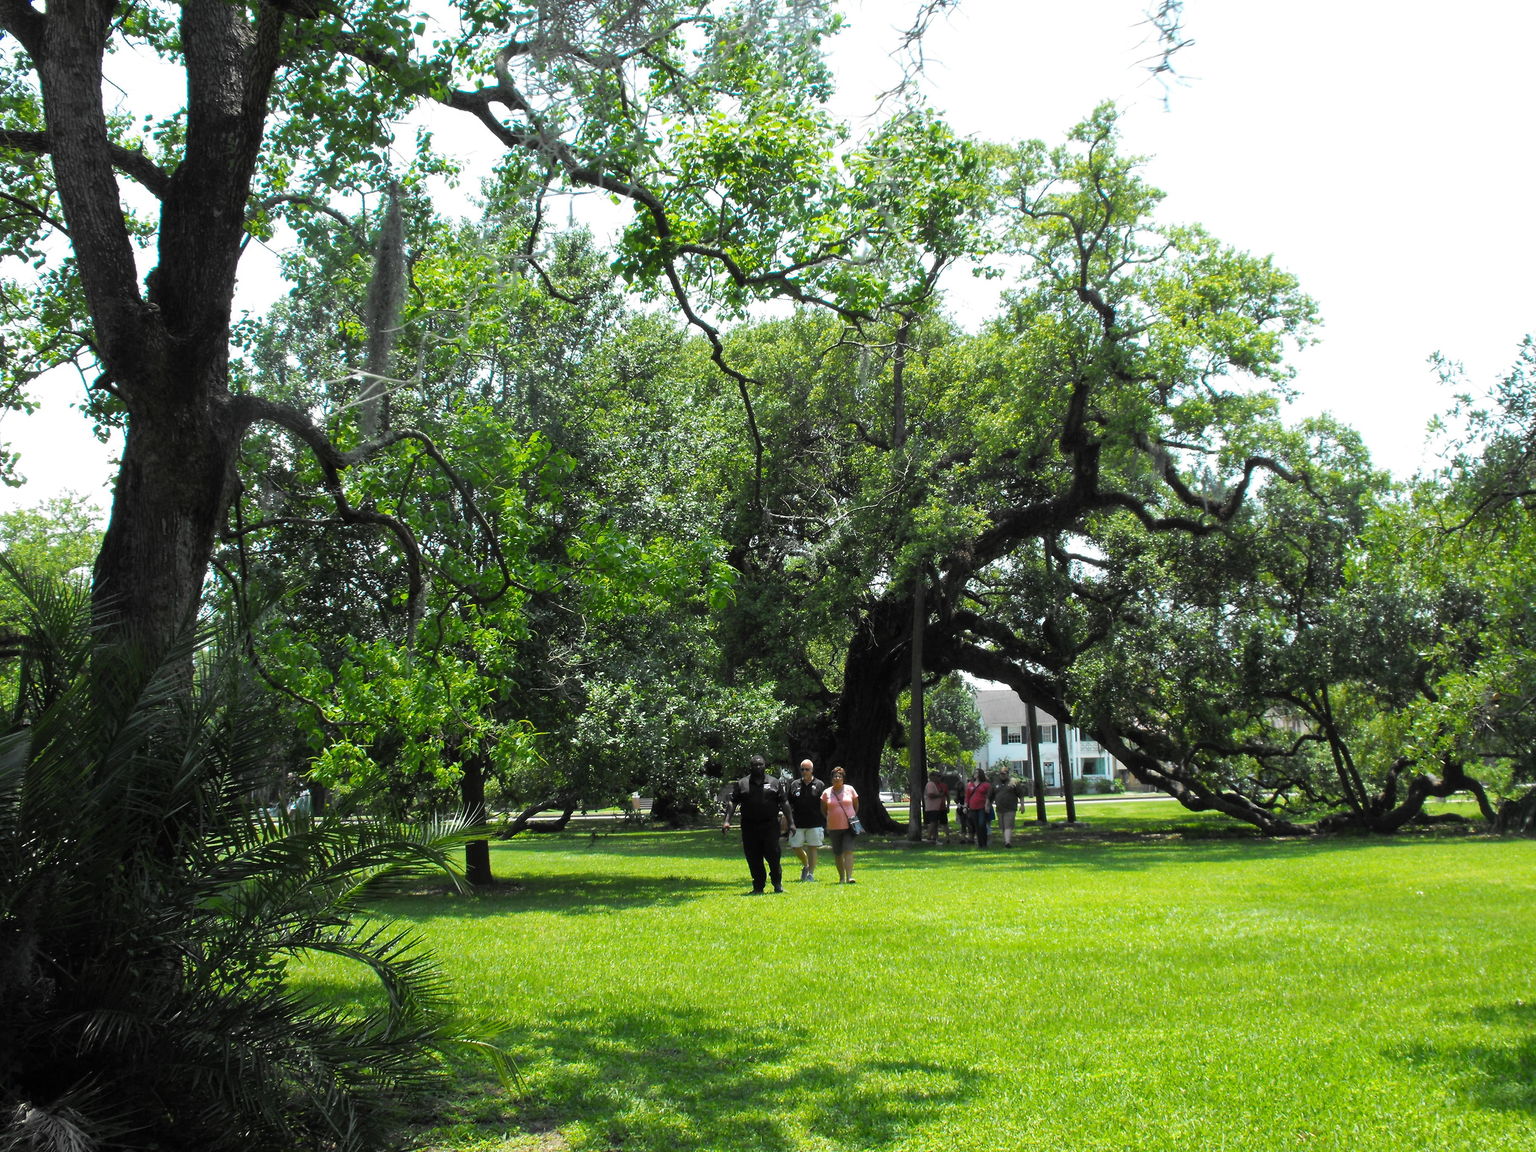 Oldest Oak Tree in America 800 years.